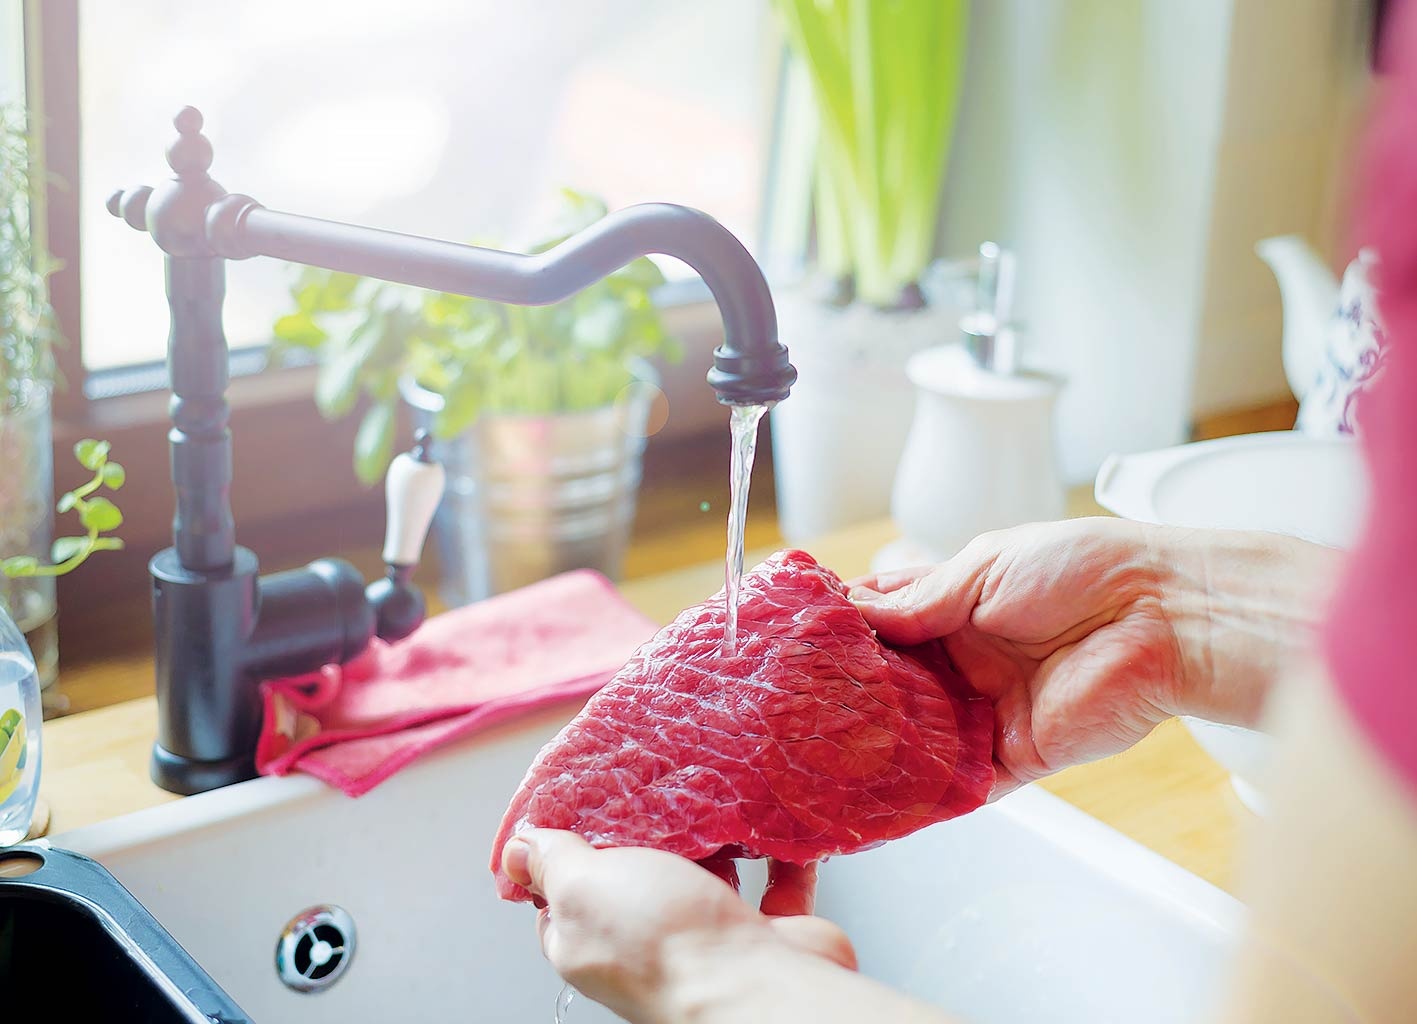 Musí se maso před vařením mýt? Není to nejlepší nápad - Znojemský deník